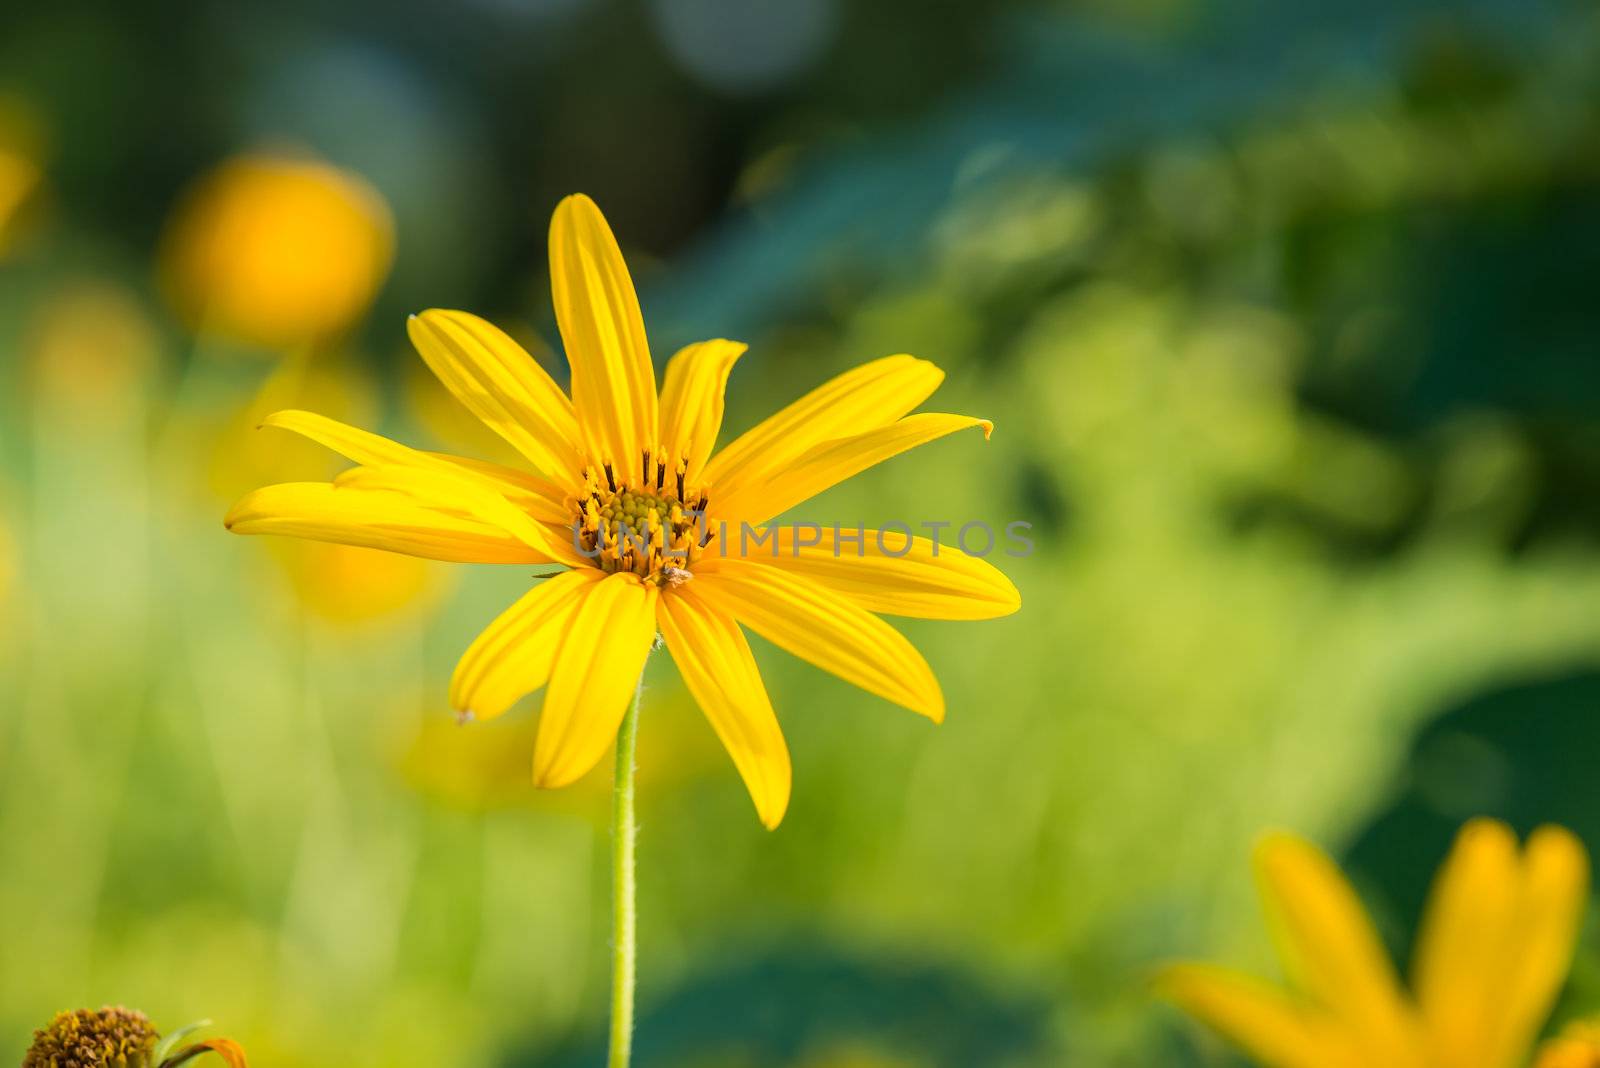 Yellow topinambur flowers by wmitrmatr